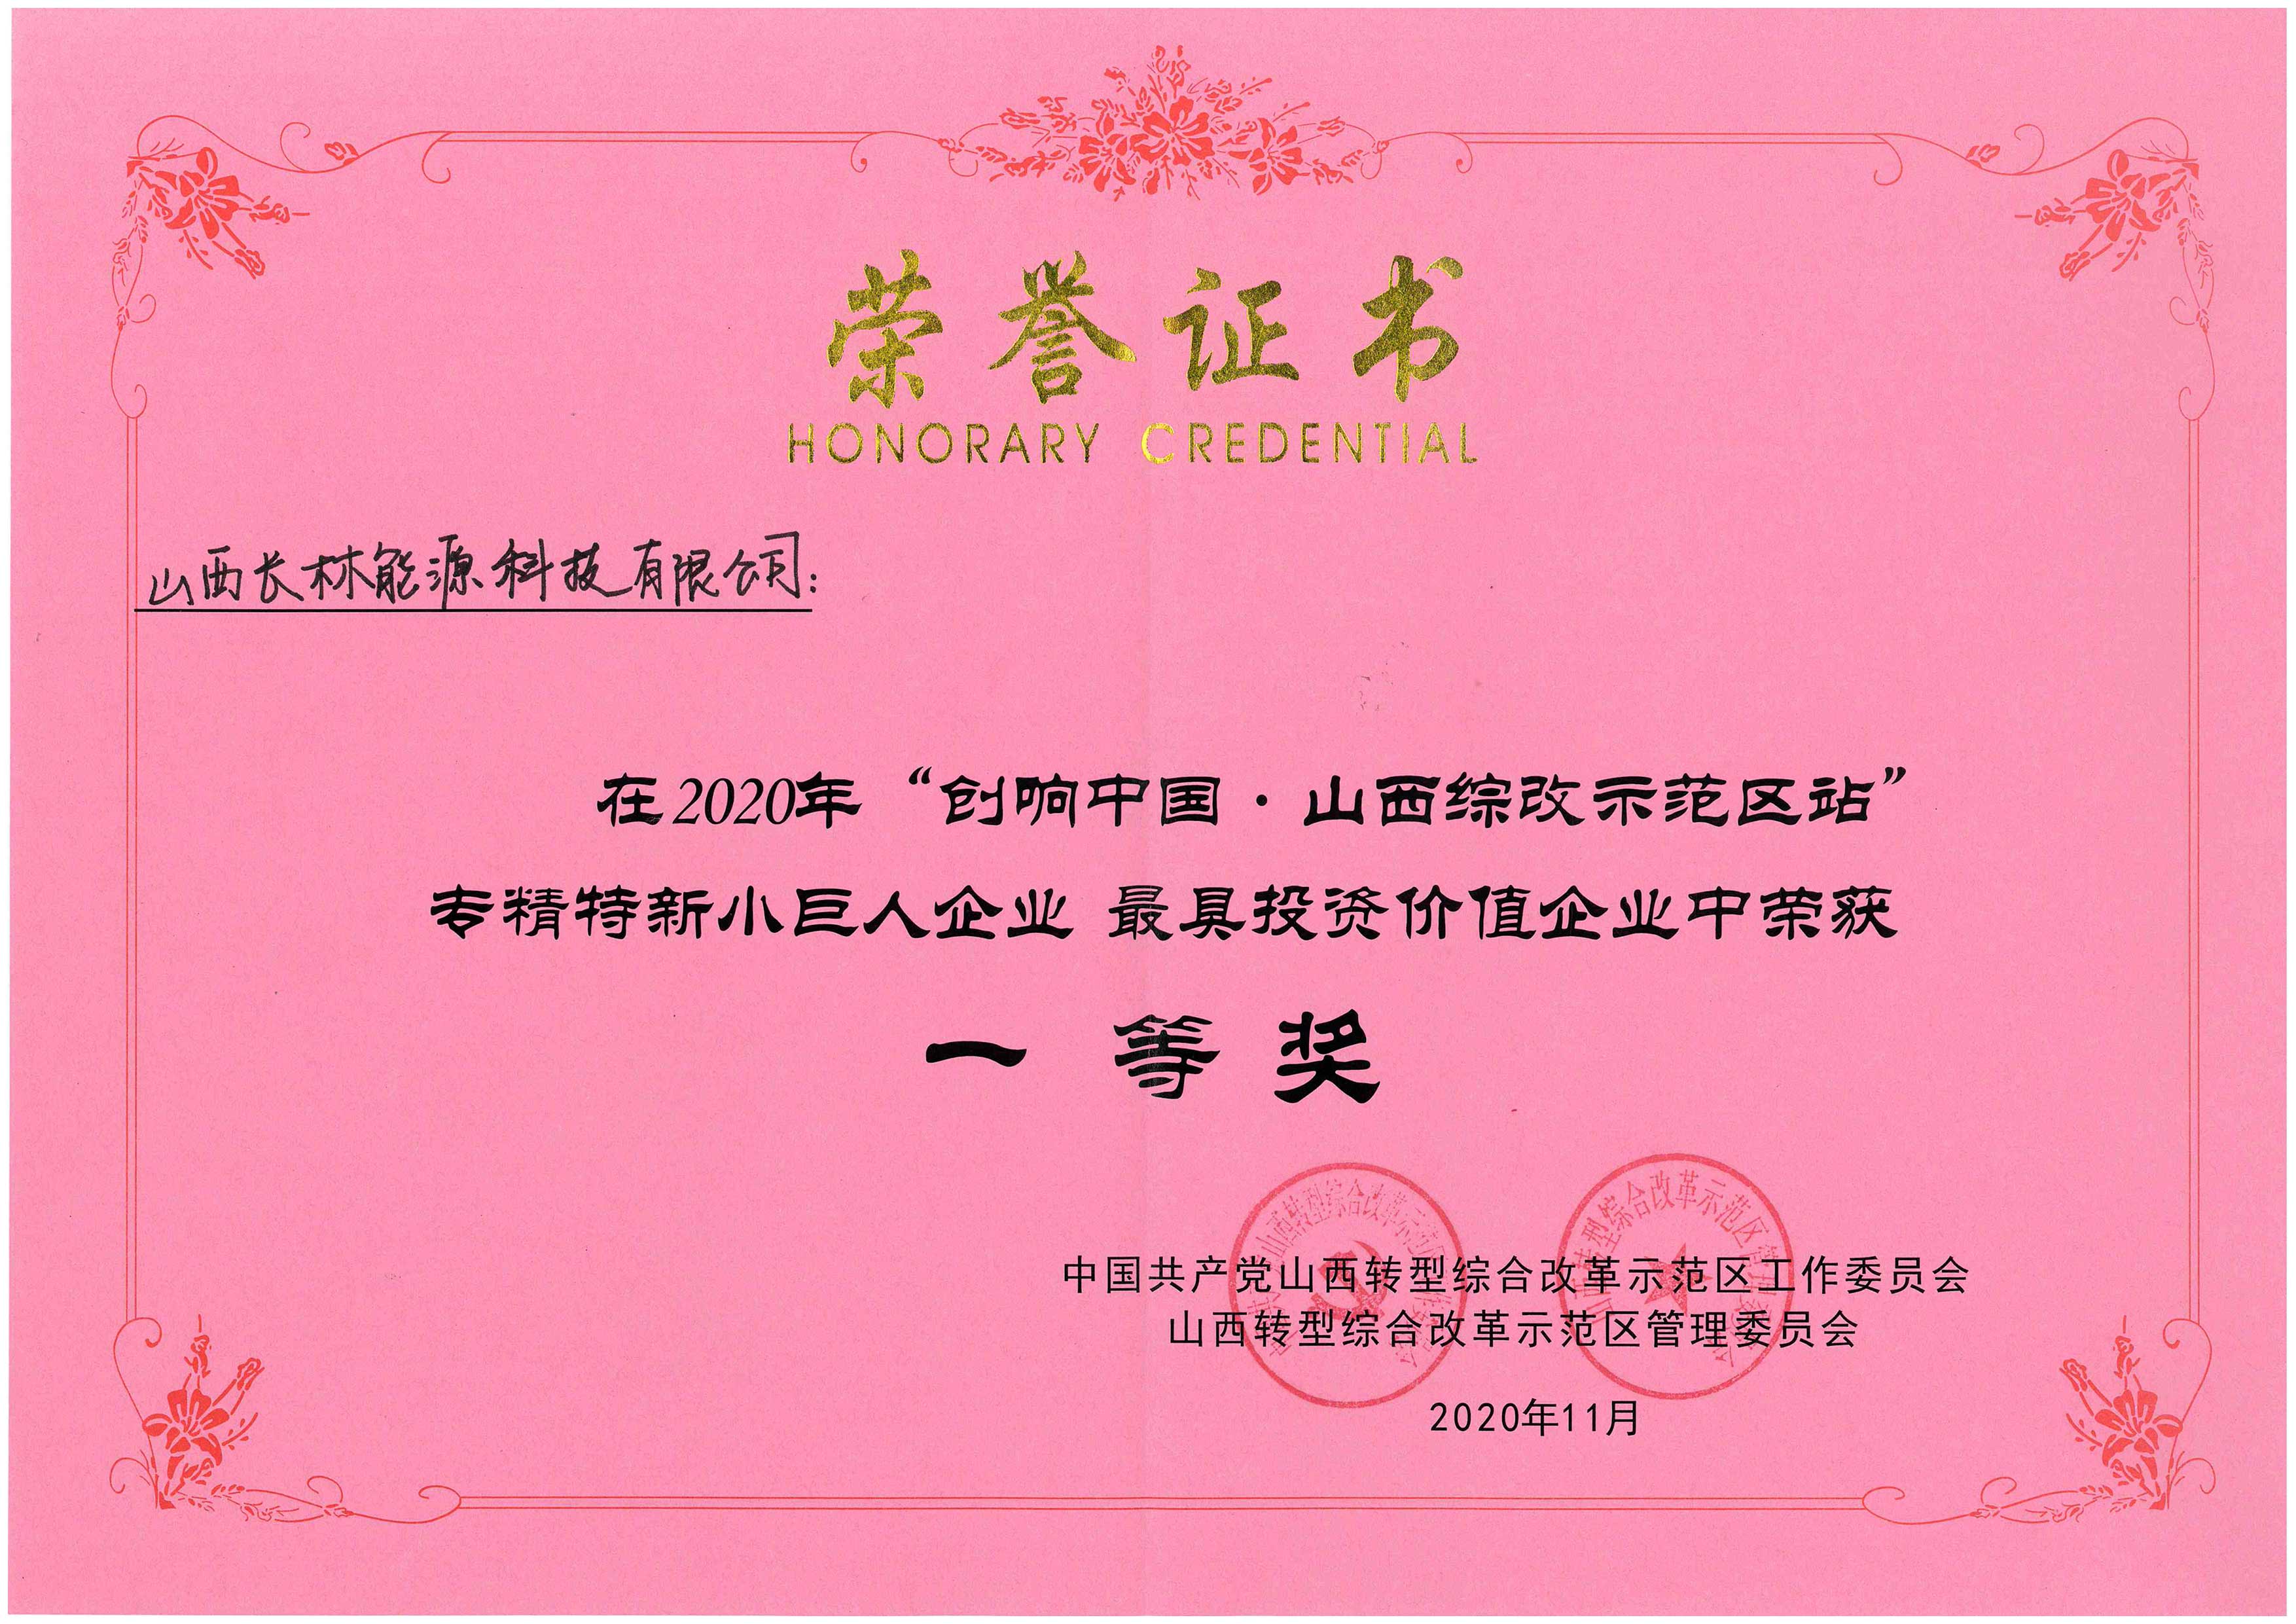 2020年“創(chuàng  )響中國 山西綜改示范區站”榮獲一等獎